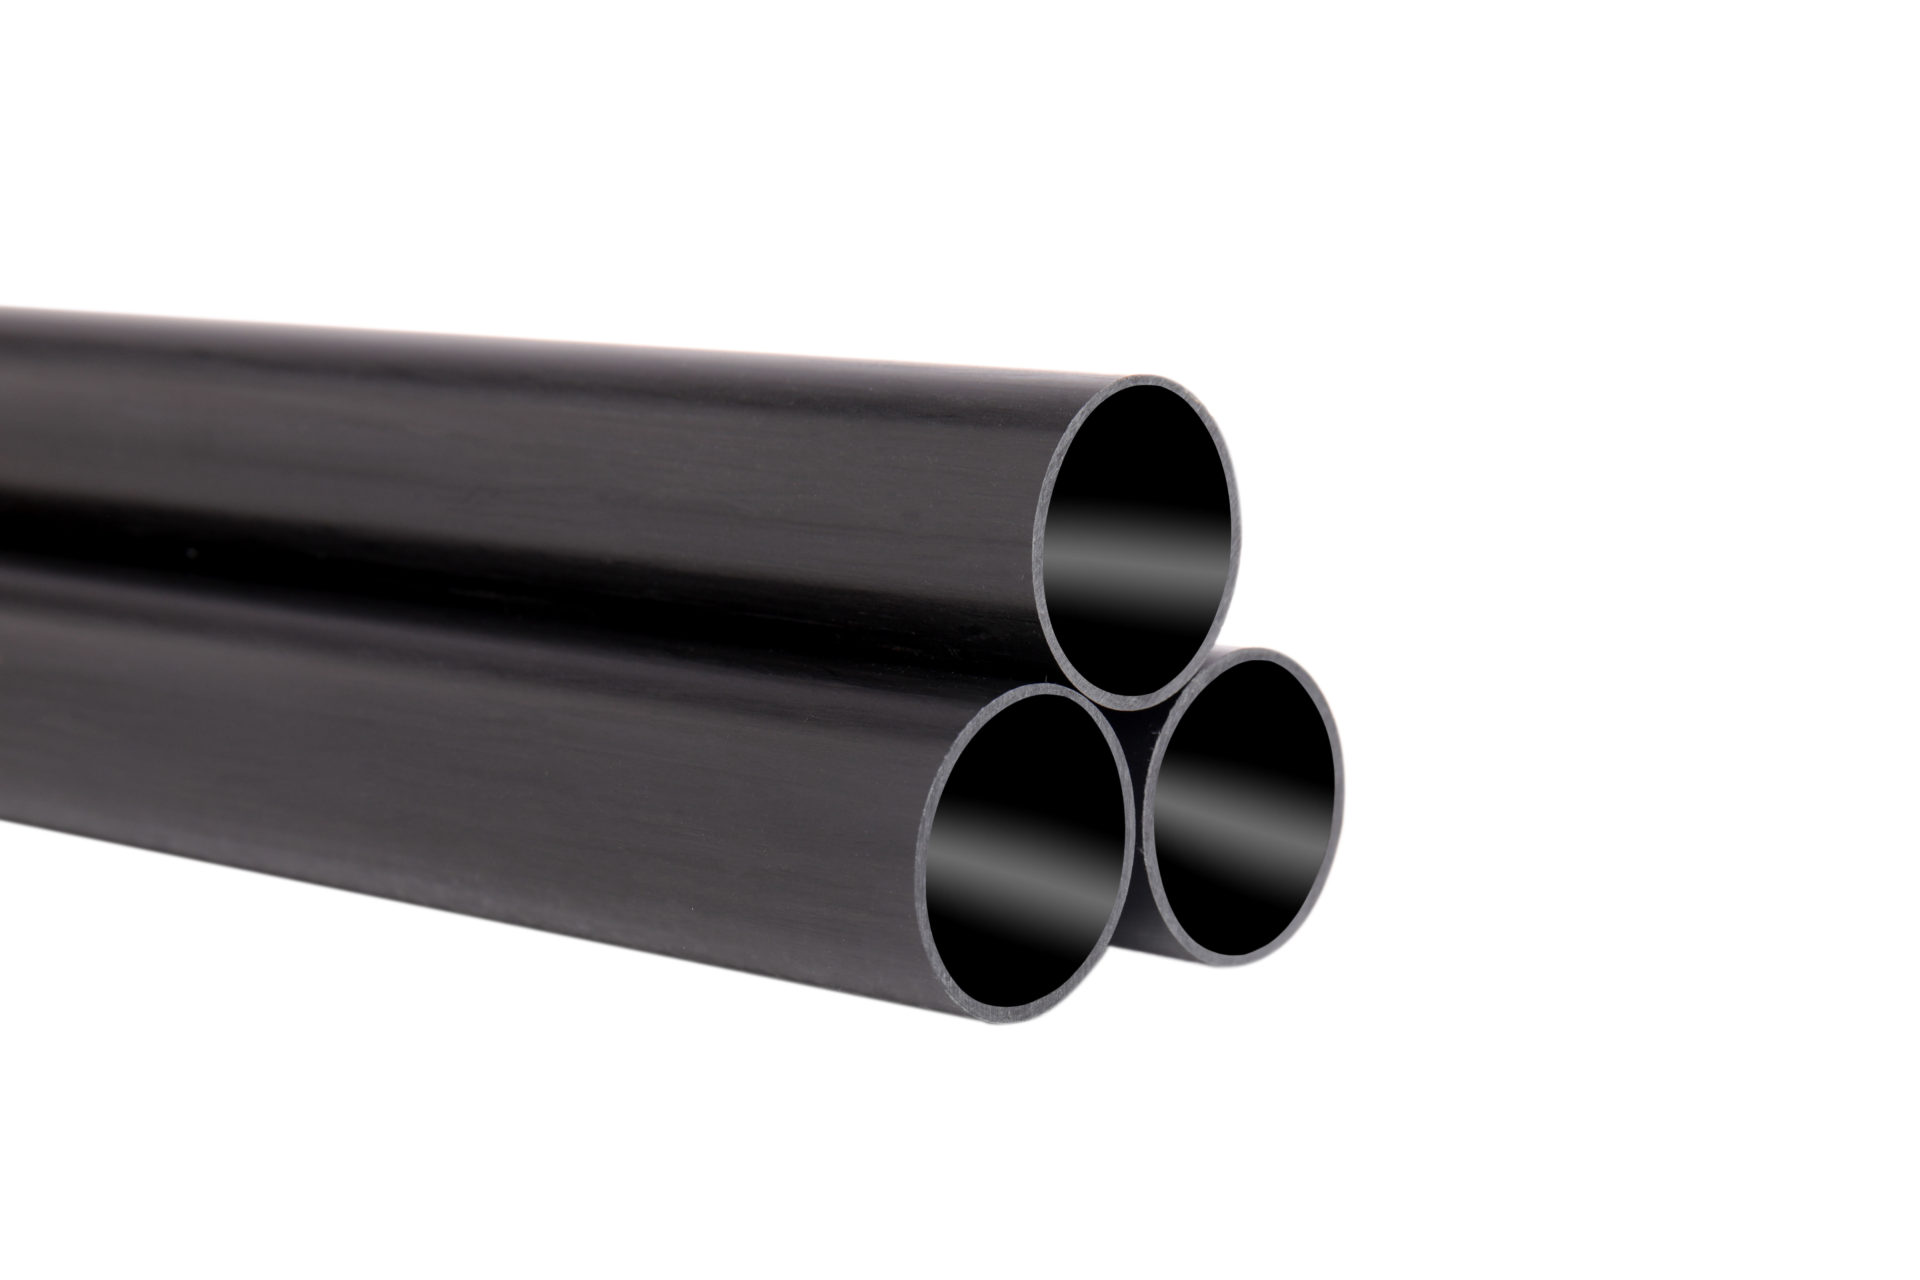 Details about   Carbon Fiber Round Tube 6mm x 4mm x 200mm Carbon Fiber Pultrusion Tubing 3 Pcs 